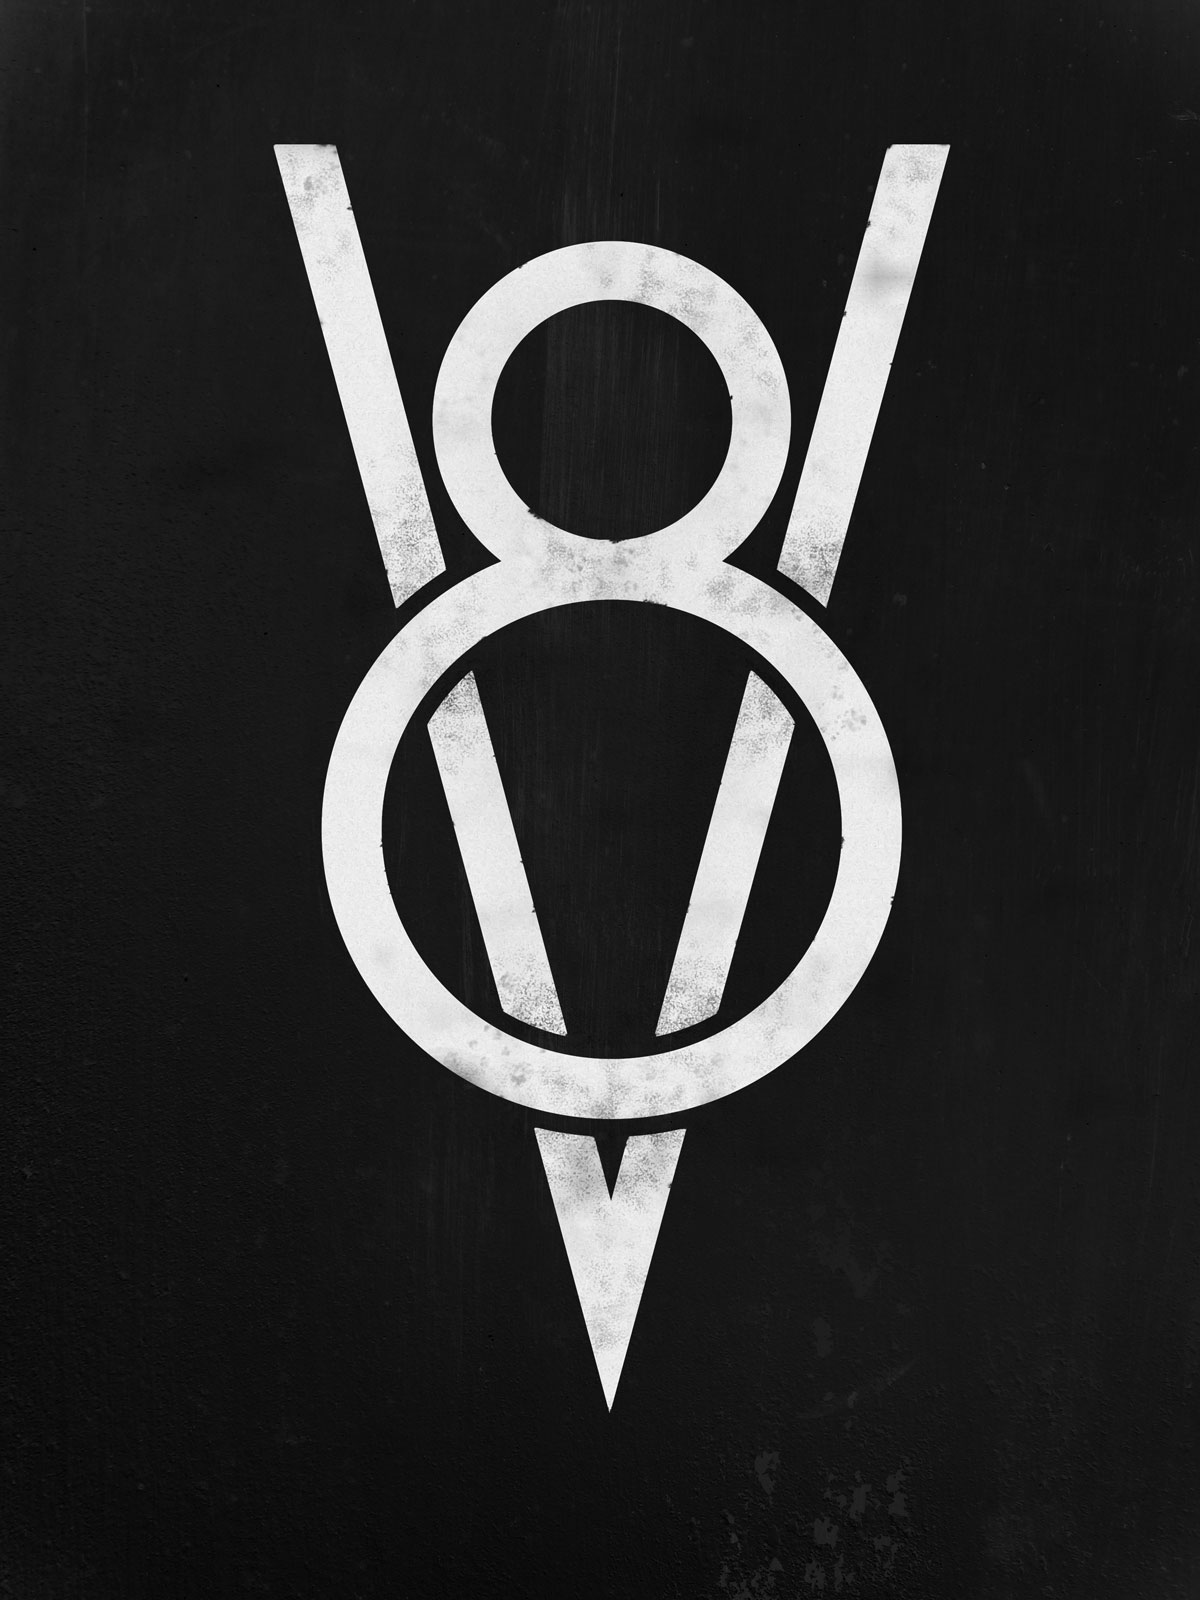 V8 logo, Tattoos?, Pinterest, Tattoo. pinterest.com. helpful non helpful. 